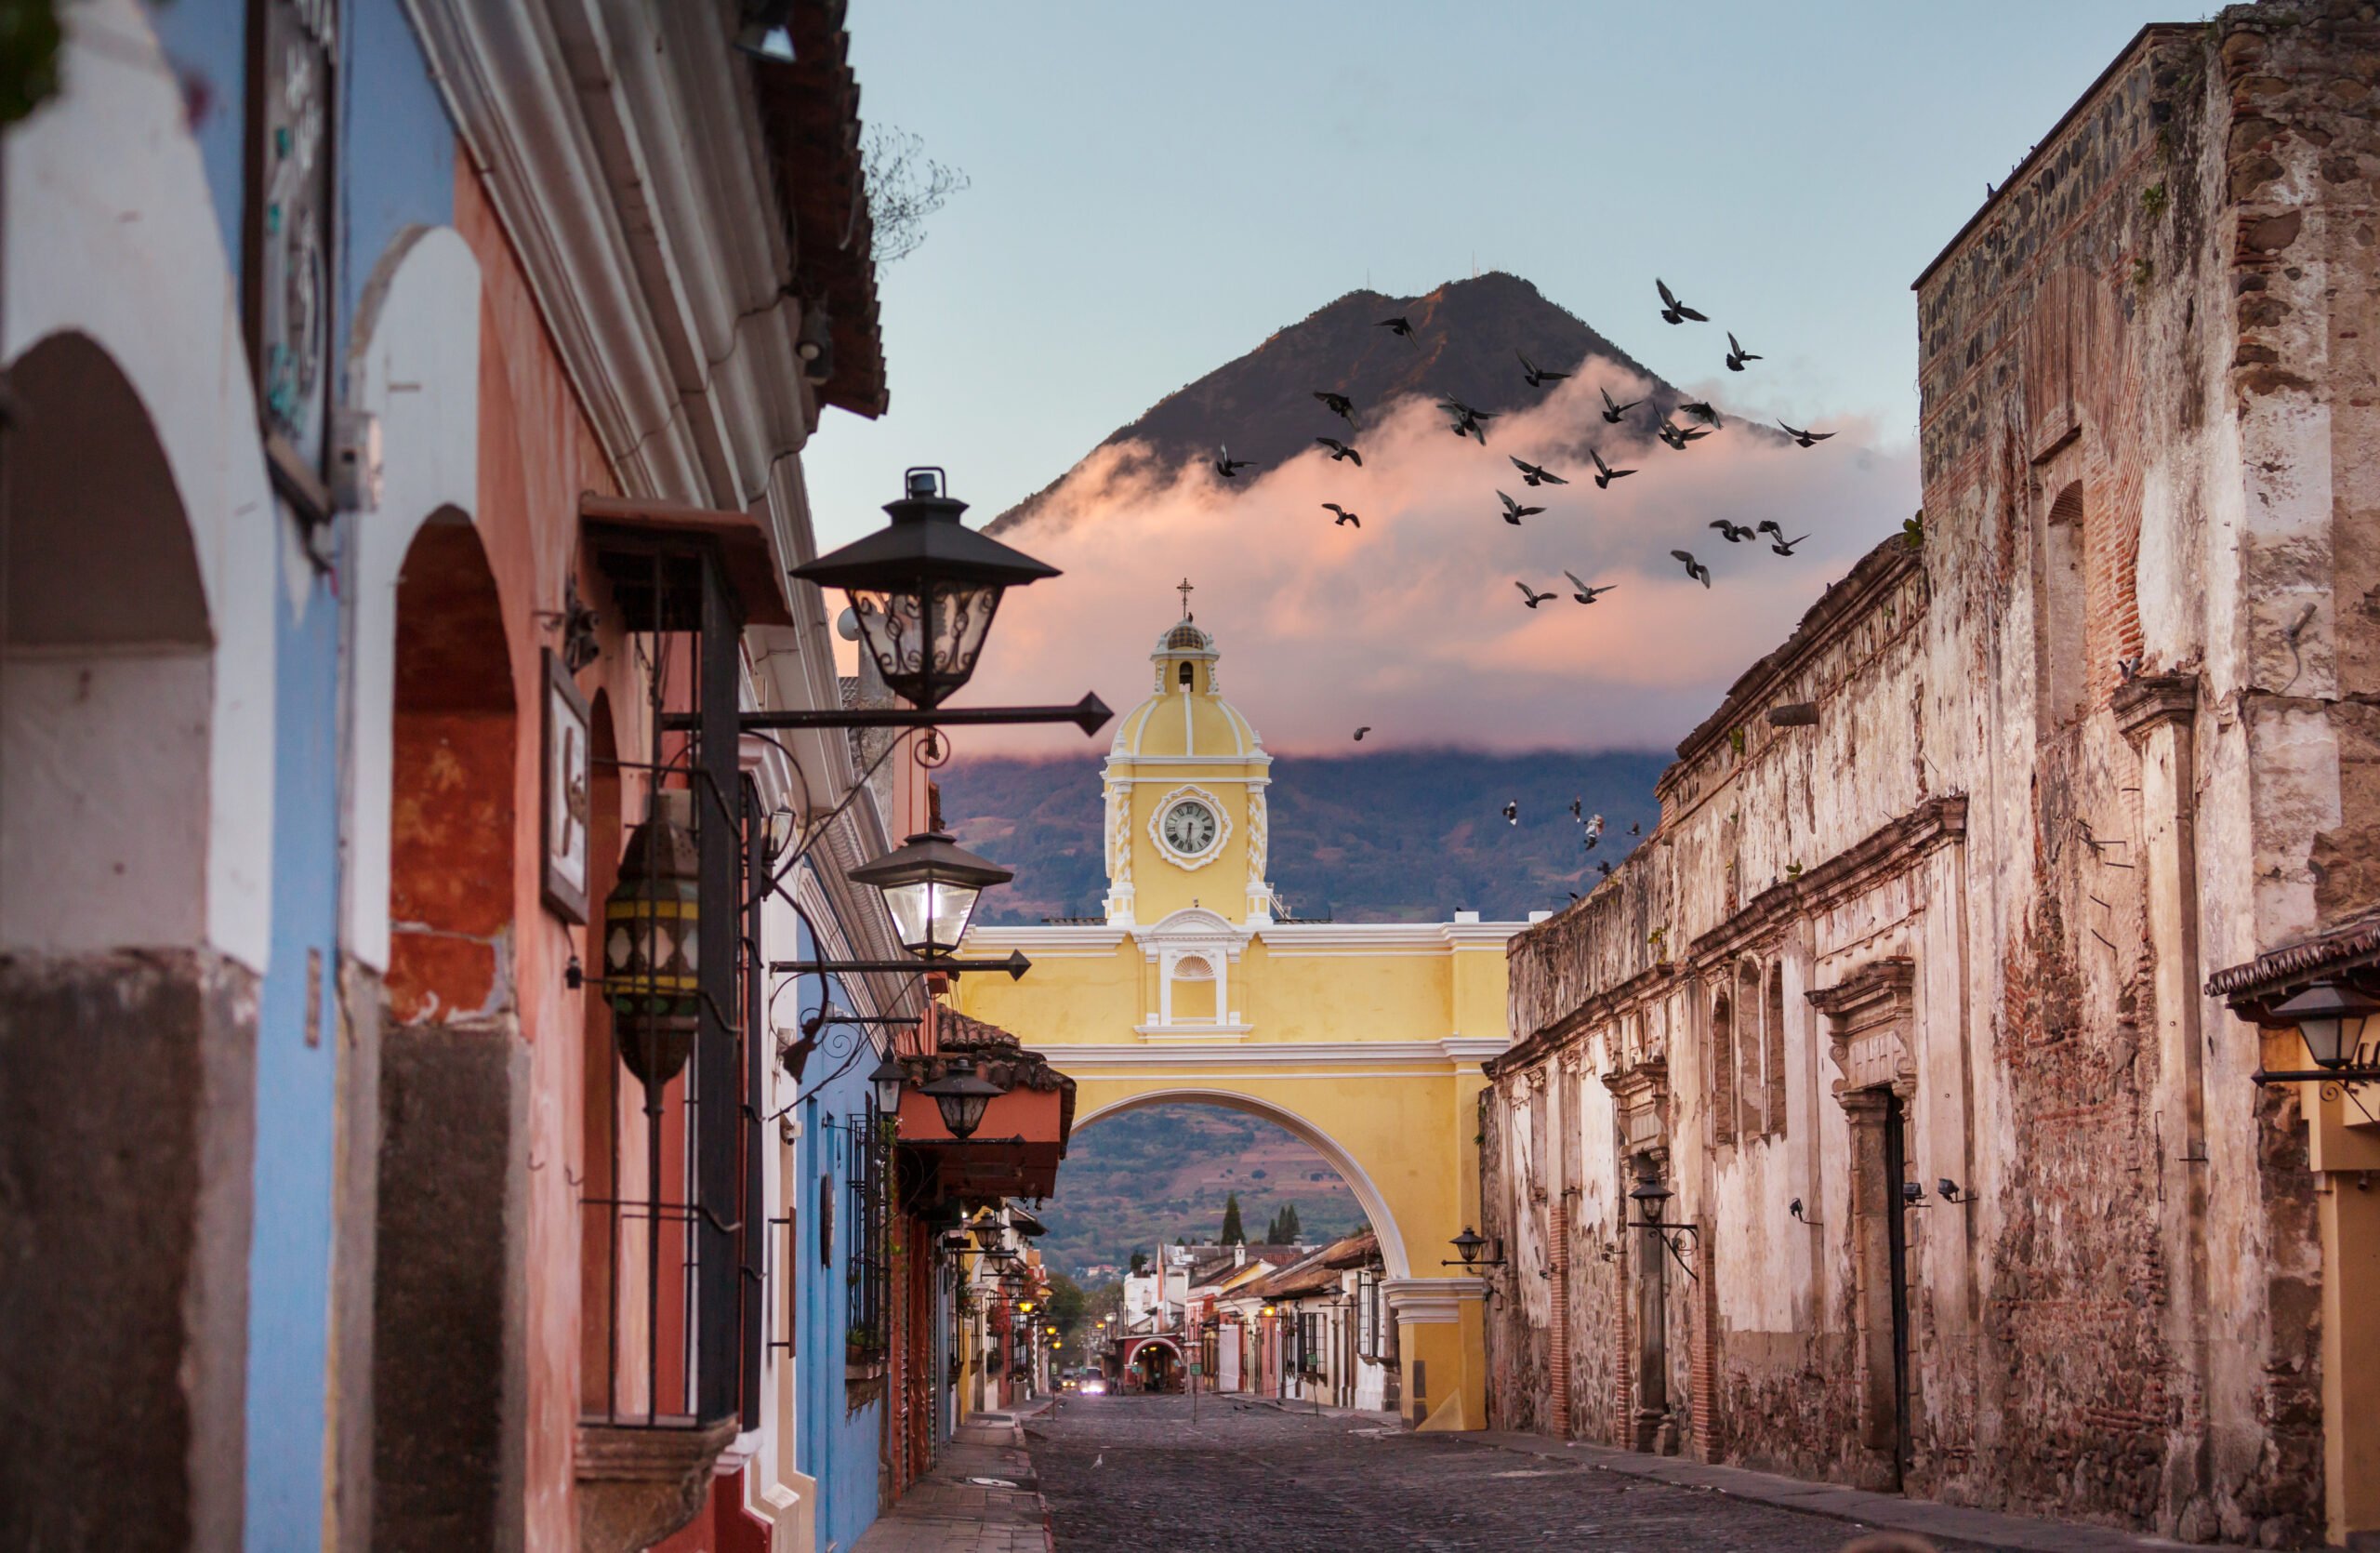 Antigua na Guatemala